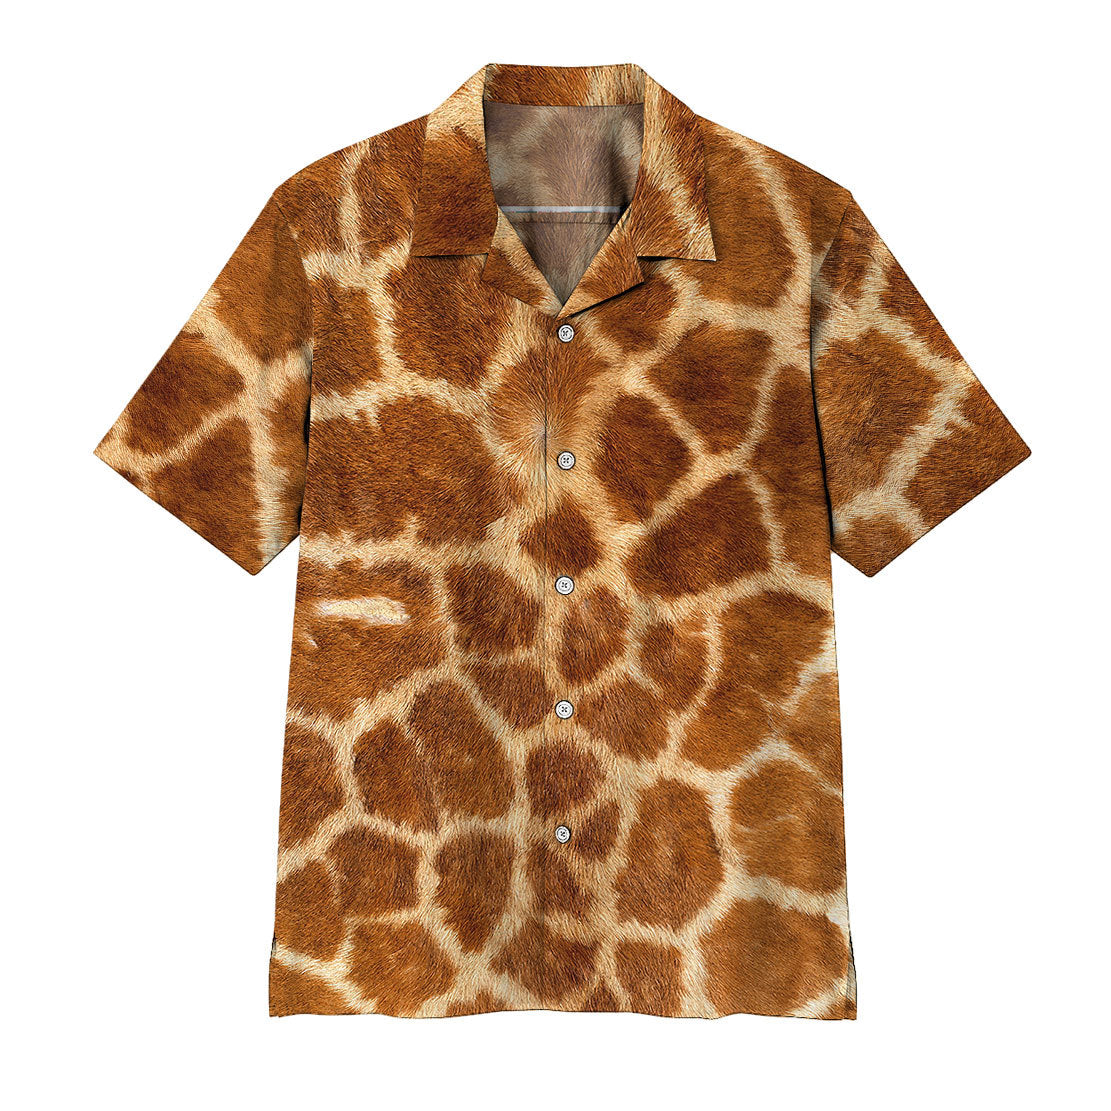 Giraffe Hawaii Shirt